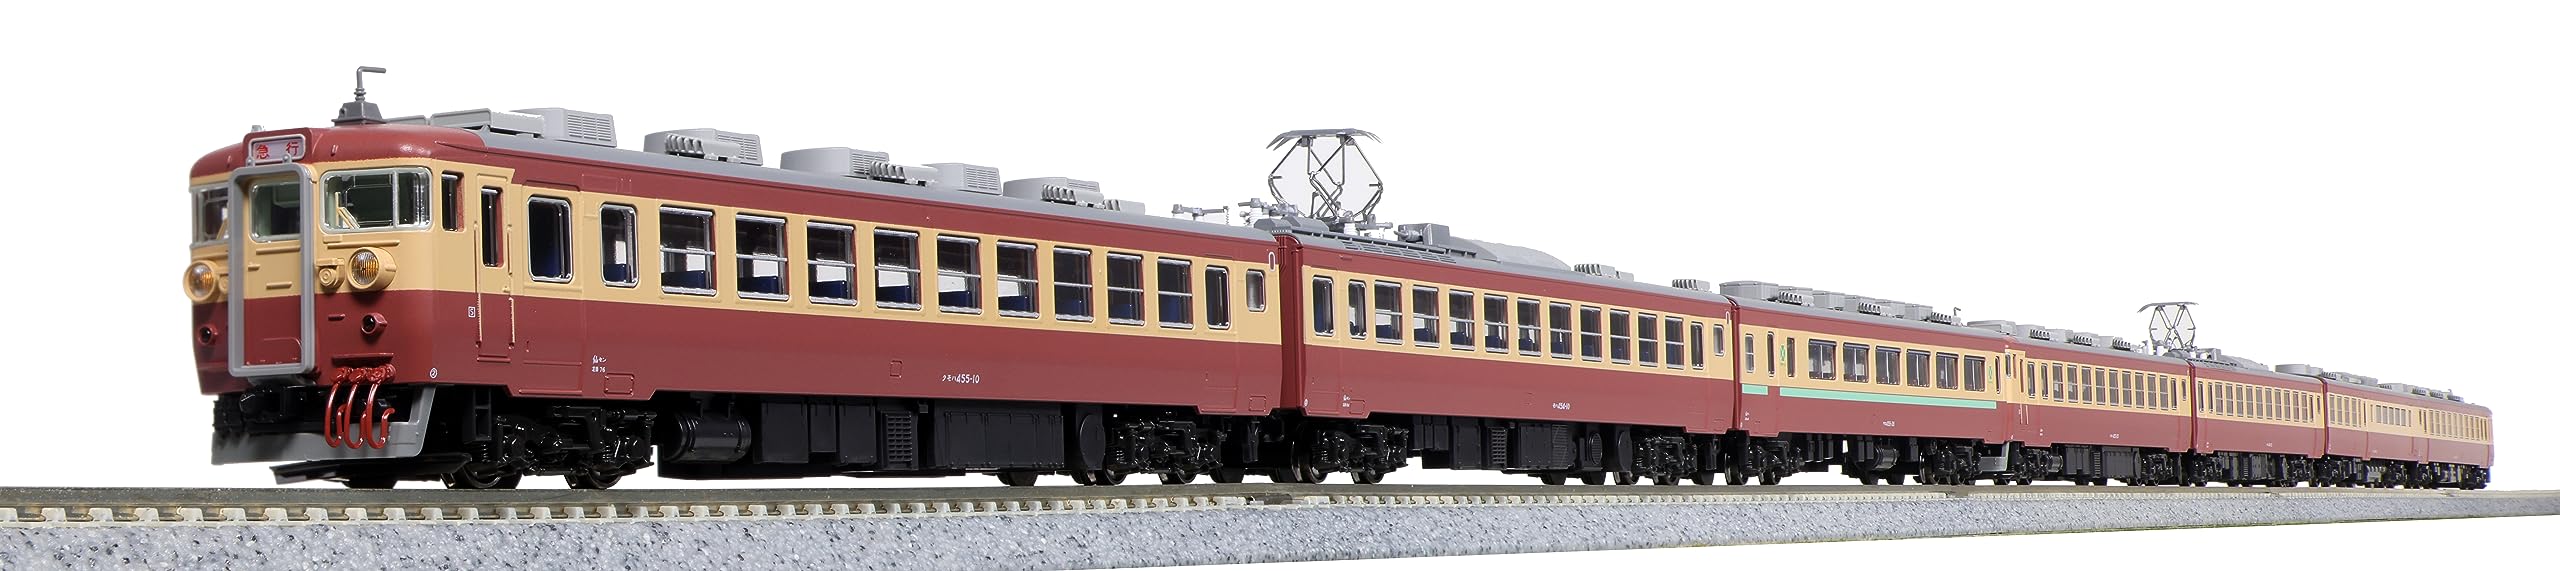 Kato N Gauge 455 Matsushima 7-Car Model Train - Series Express 10-1632